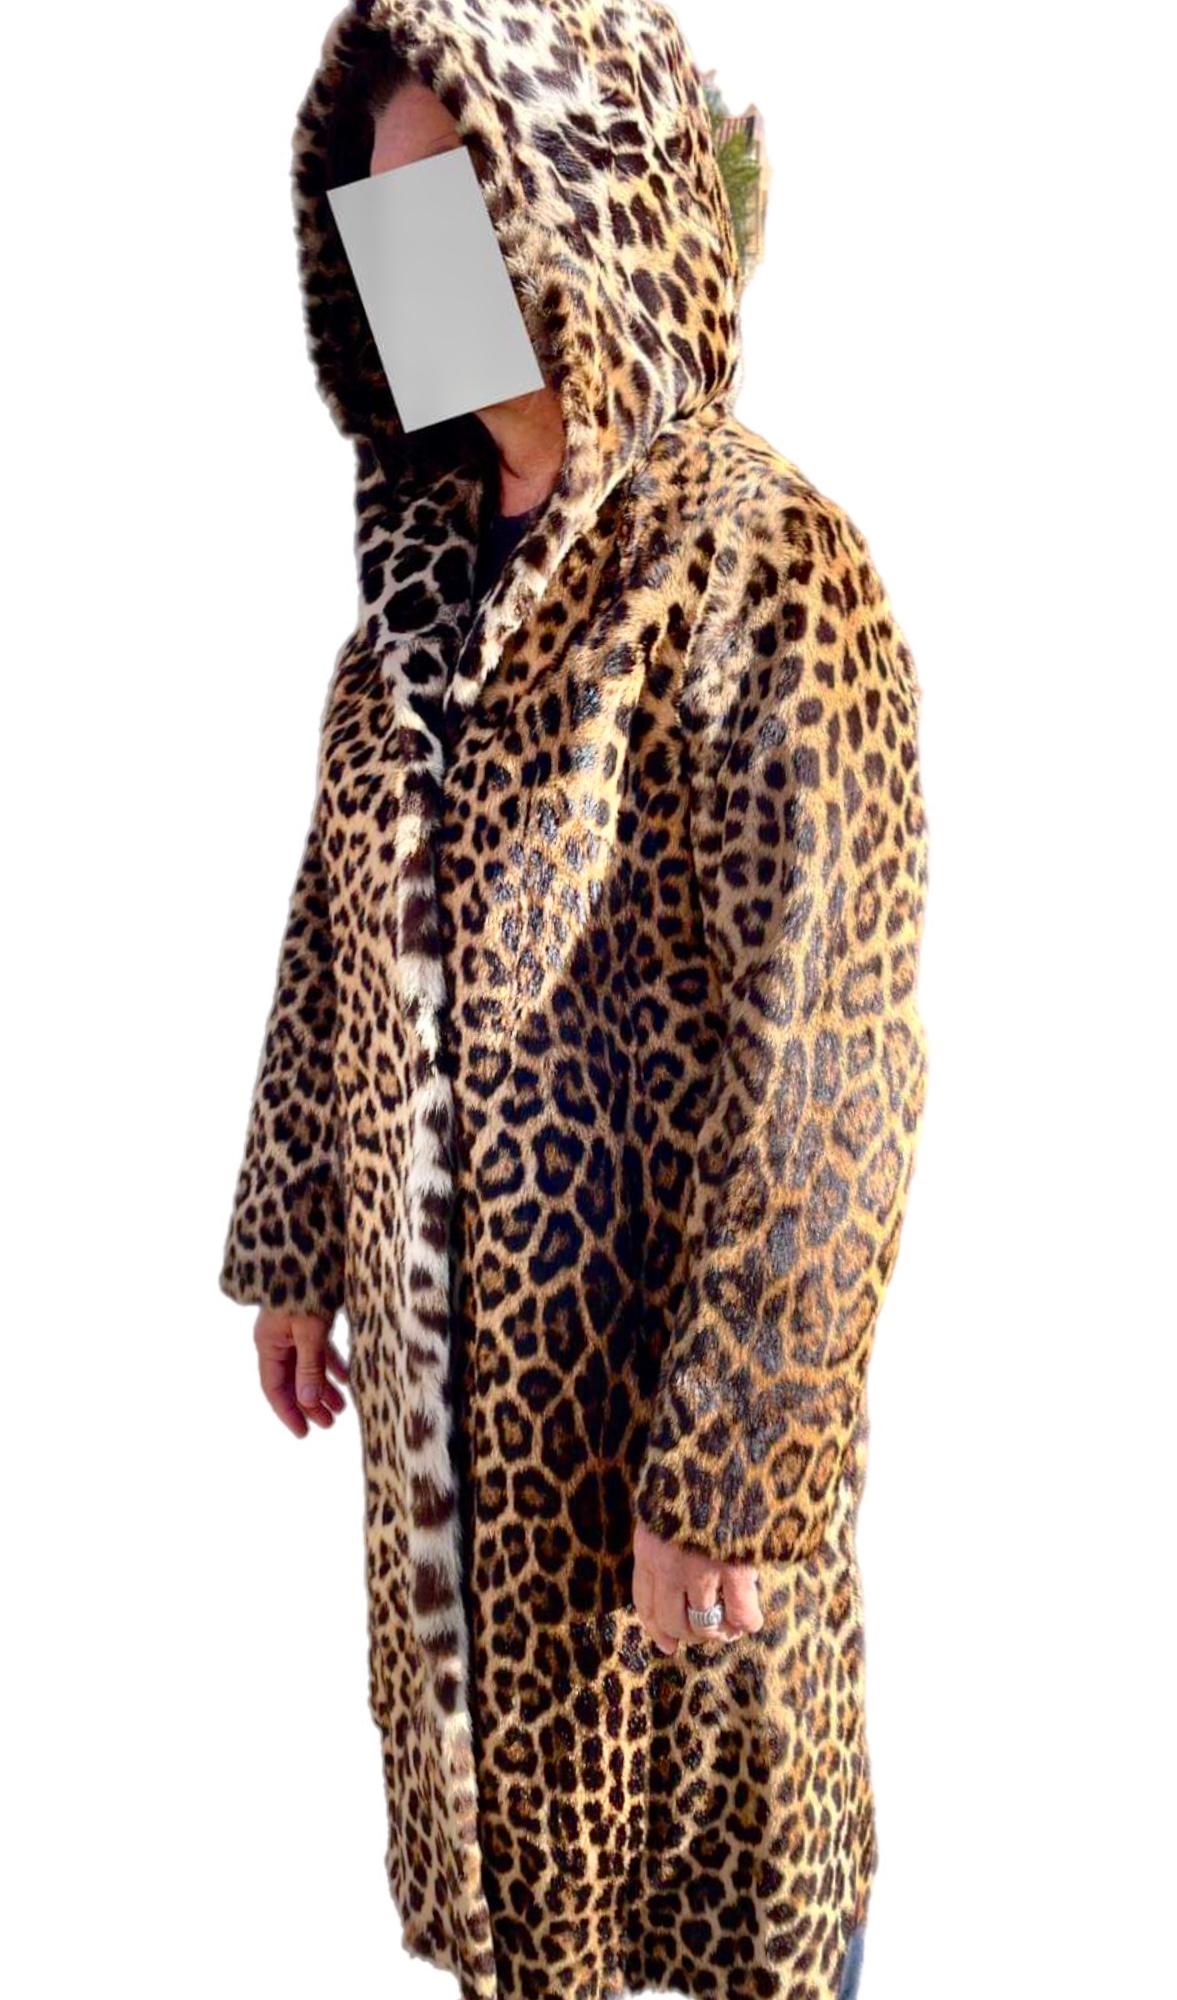 BESCHREIBUNG DES PRODUKTS:

Vintage Leopard Pelzmantel Größe 12

Zustand: Neuwertiger Zustand

Verschluss: Metallschließe

Farbe: Orange, braun und schwarz

MATERIAL: Pelz

Art des Kleidungsstücks: Leopardenfellmantel 

Ärmel: Gerade

Taschen: